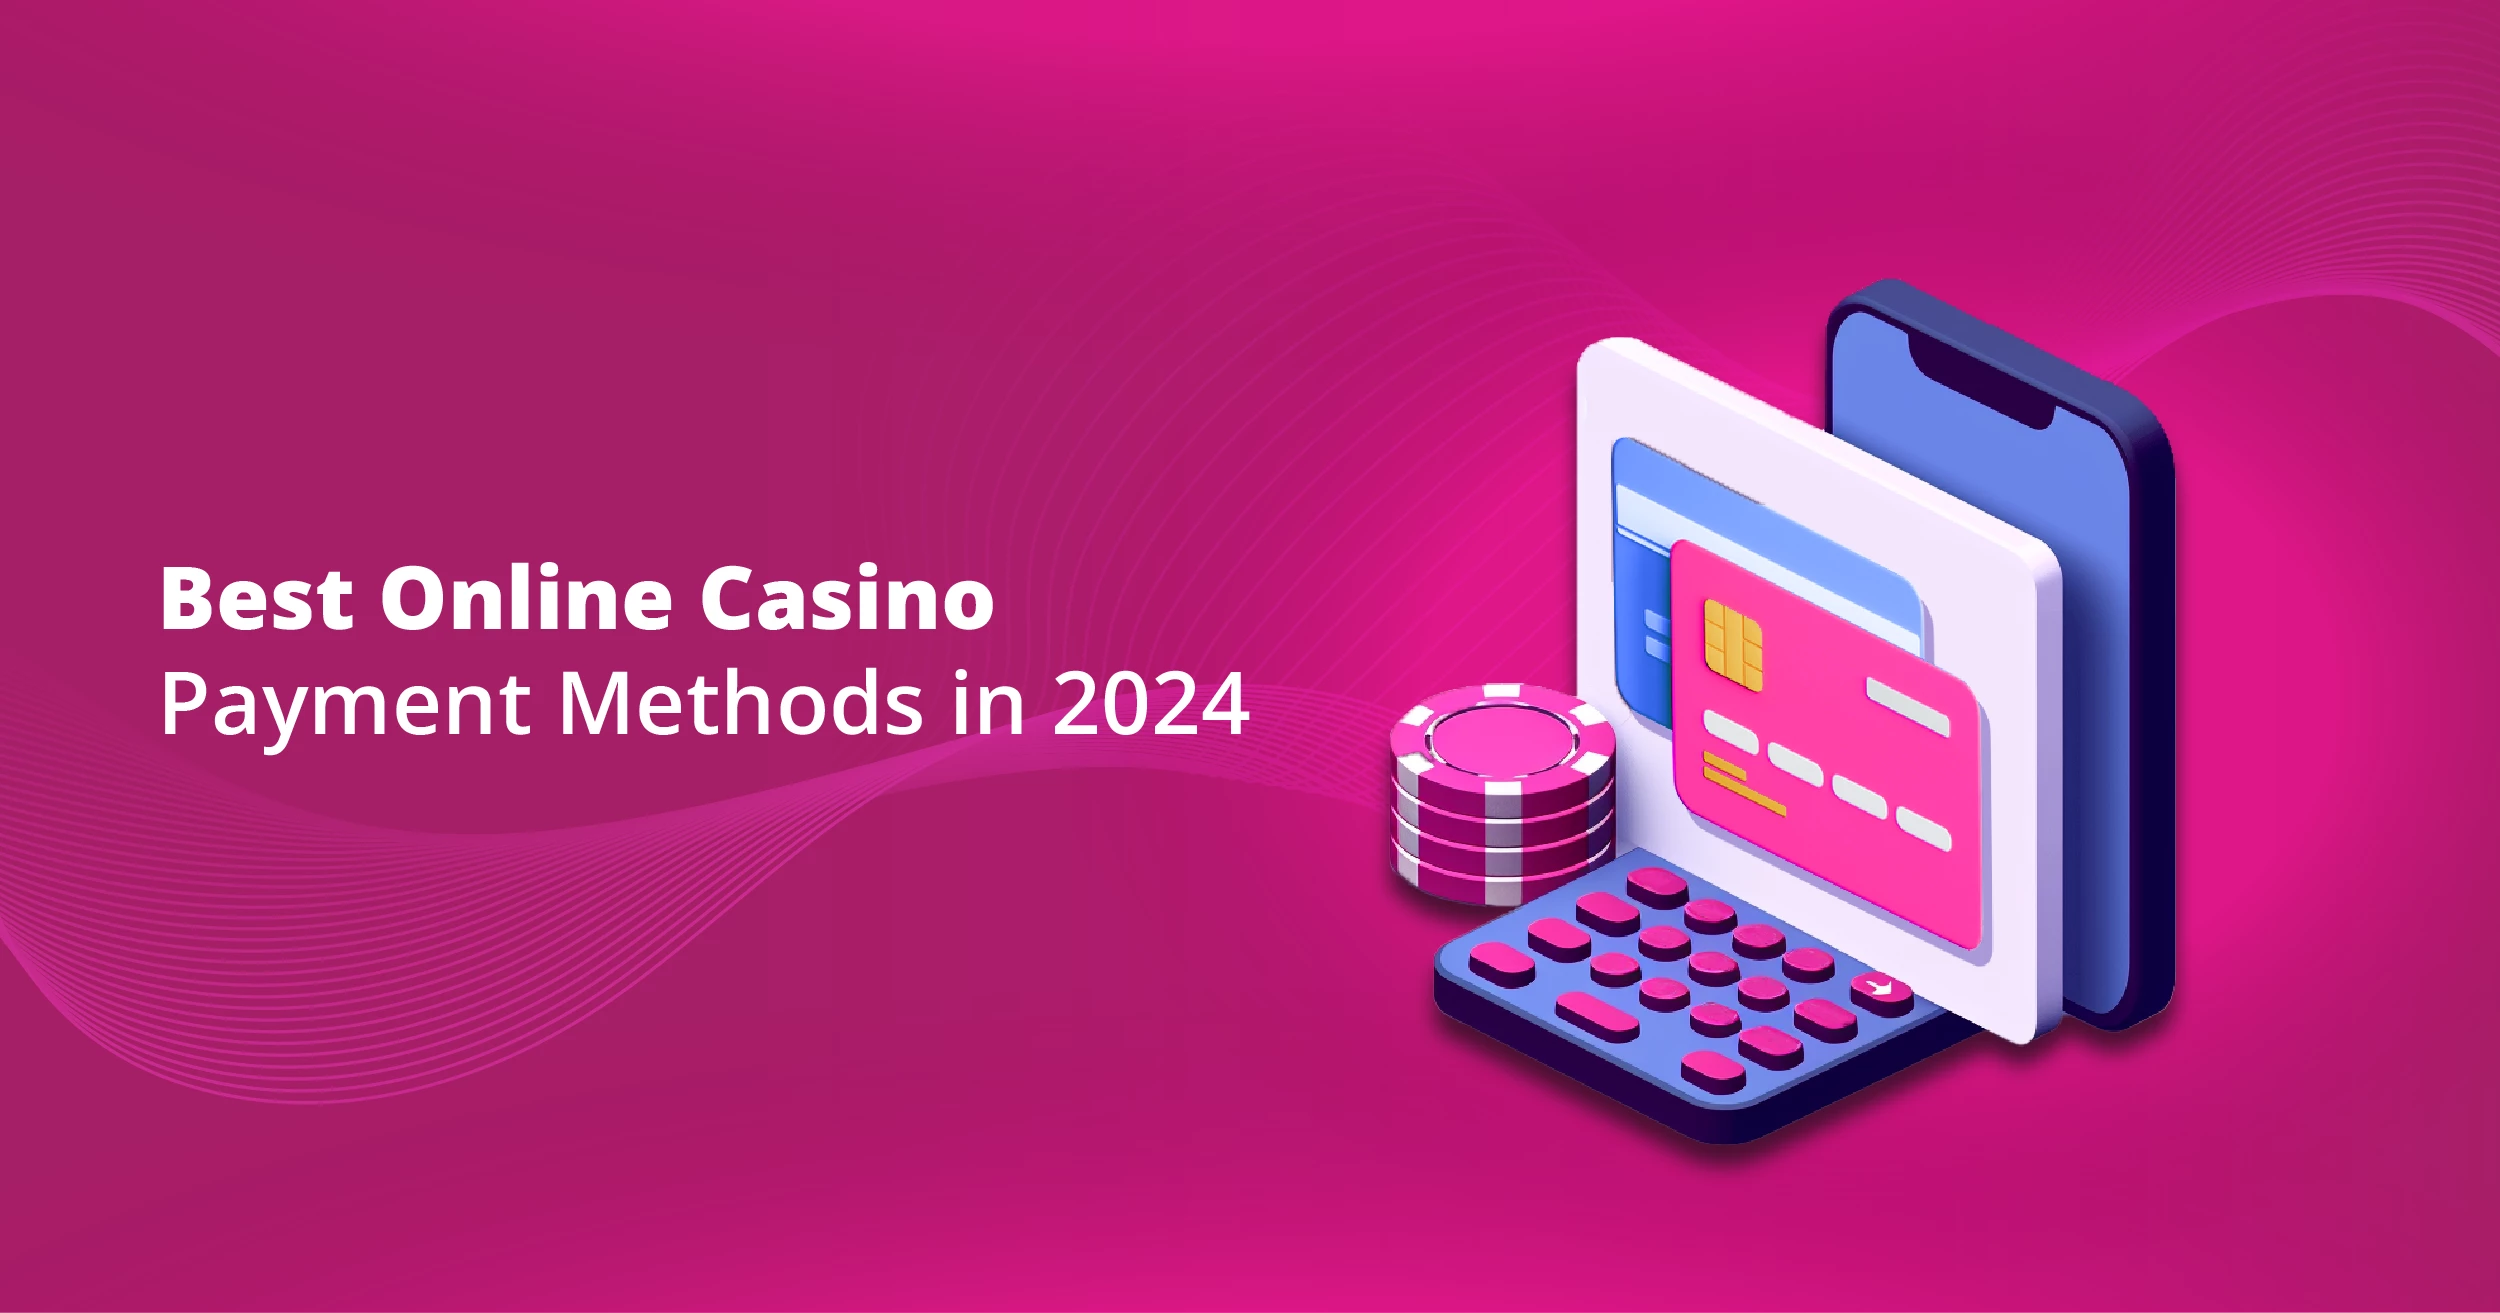 Best Online Casino Payment Methods in 2024